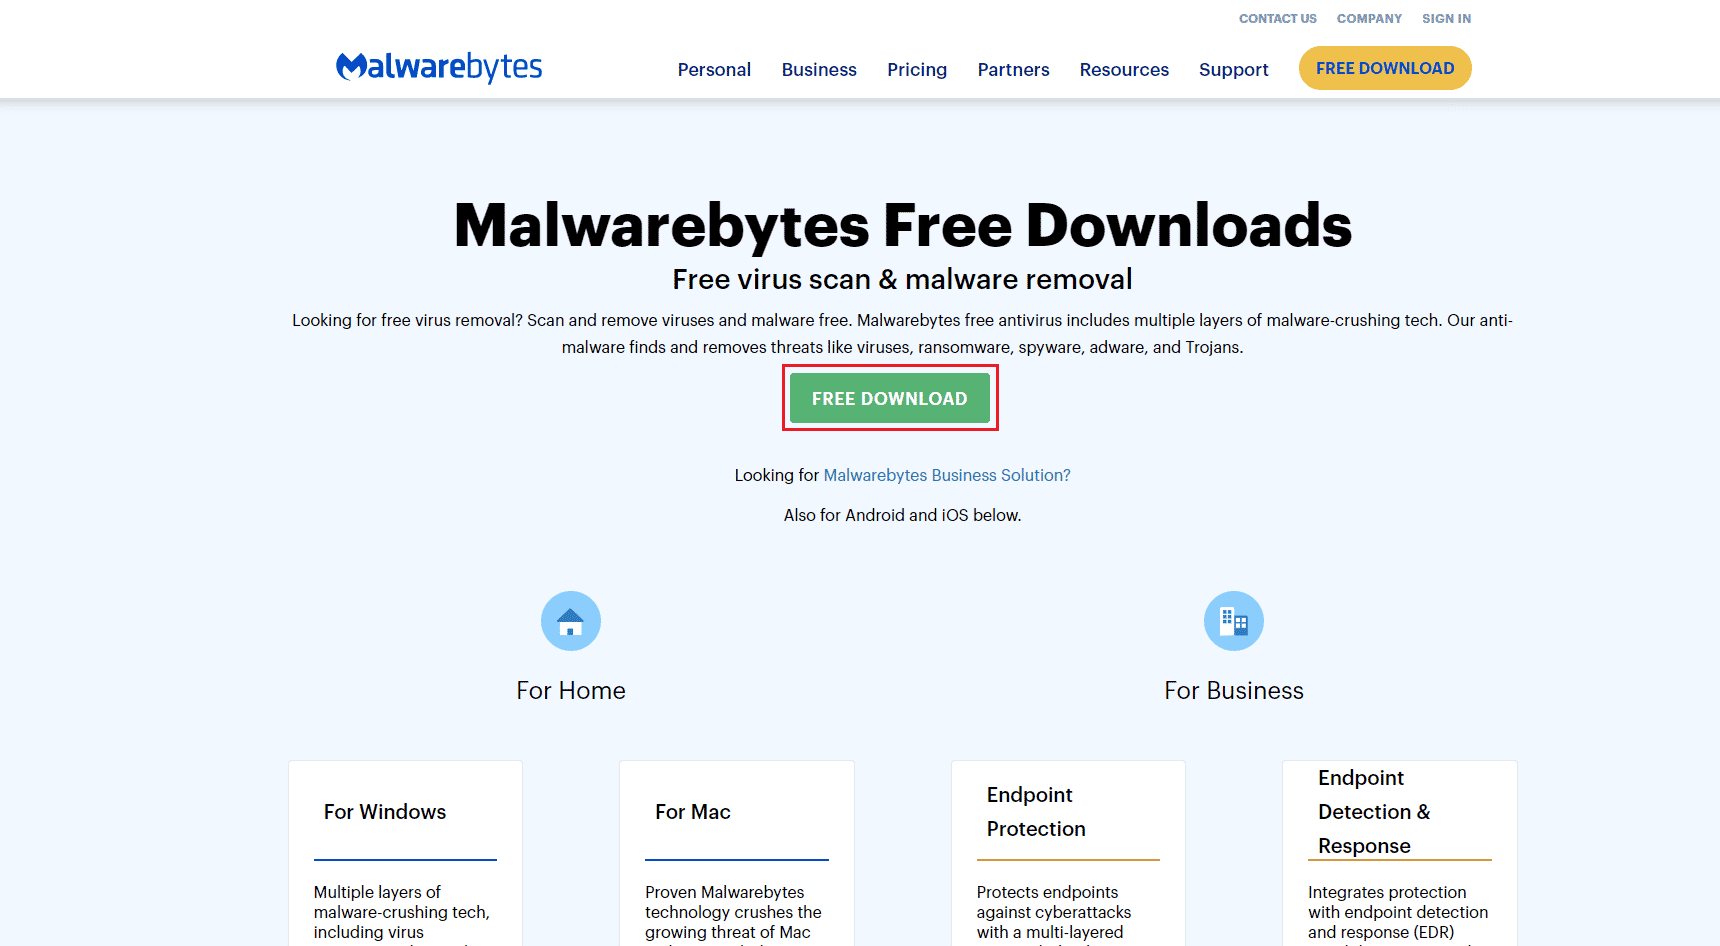 malwarebytes dowload page